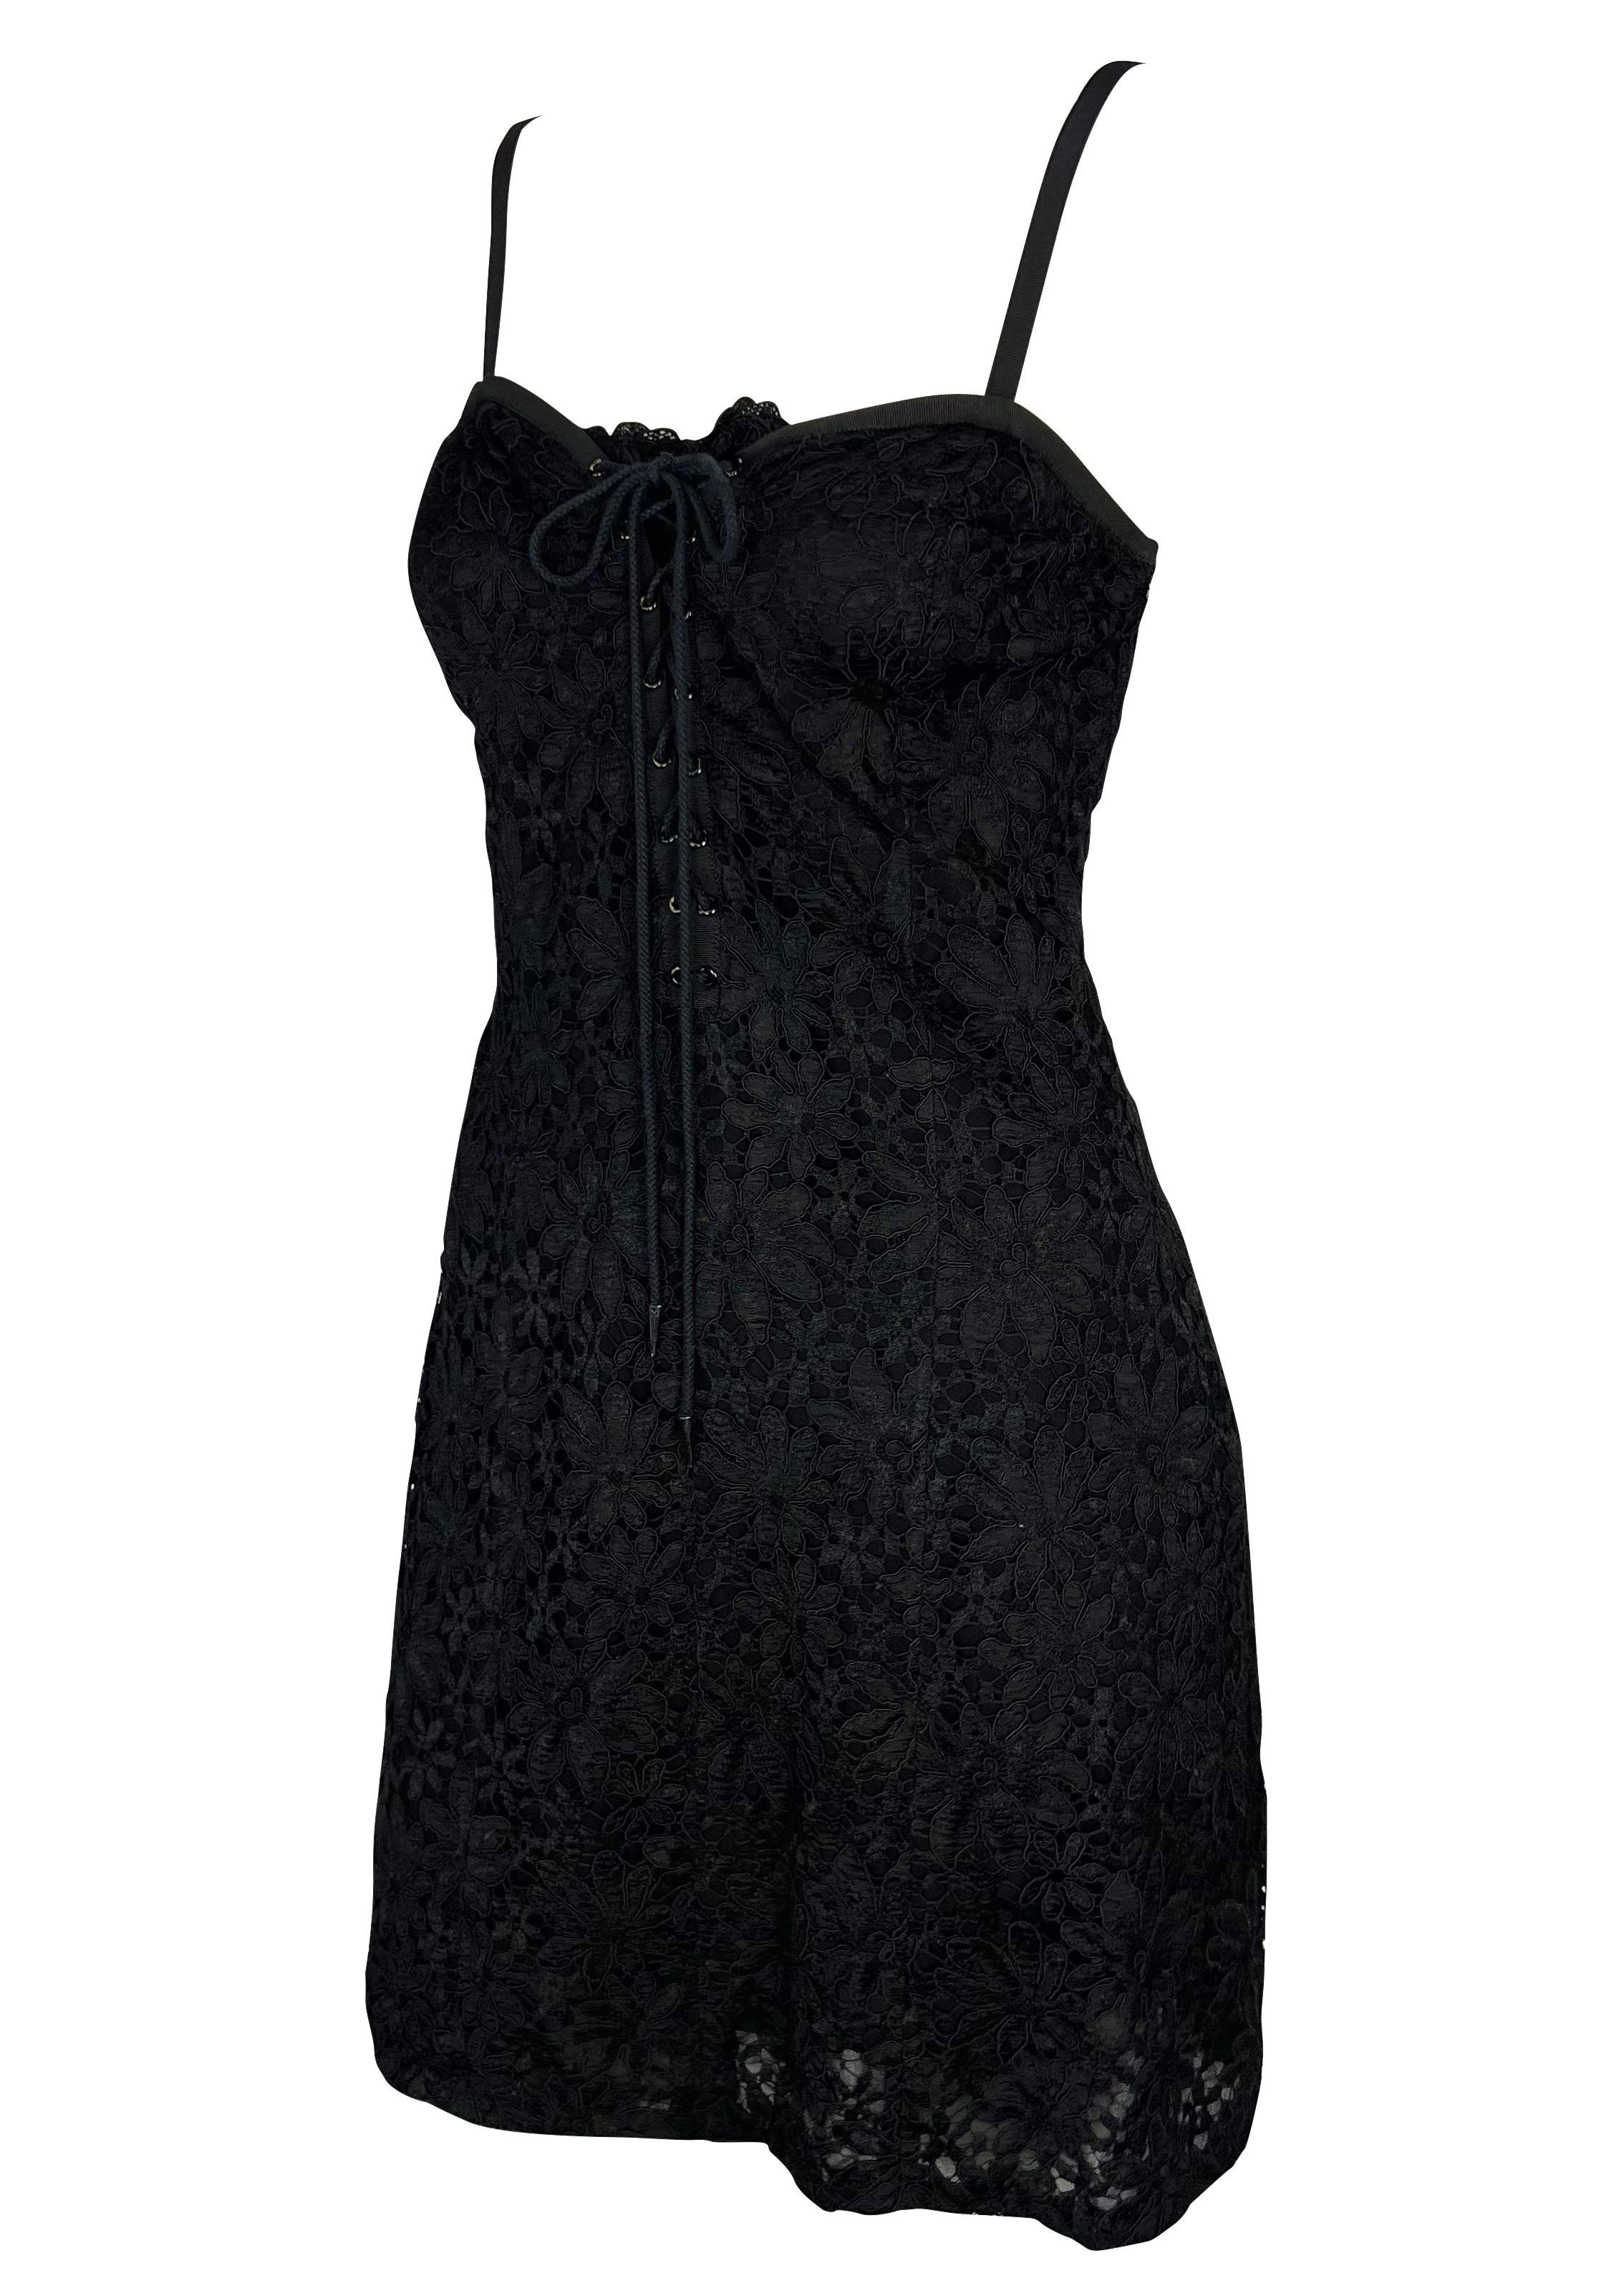 Ich präsentiere ein Yves Saint Laurent Rive Gauche Minikleid aus schwarzer Spitze. Dieses wunderschöne Kleid aus den frühen 1990er Jahren ist mit Spitze überzogen und hat einen herzförmigen Ausschnitt mit Spaghetti-Trägern und eine tief sitzende